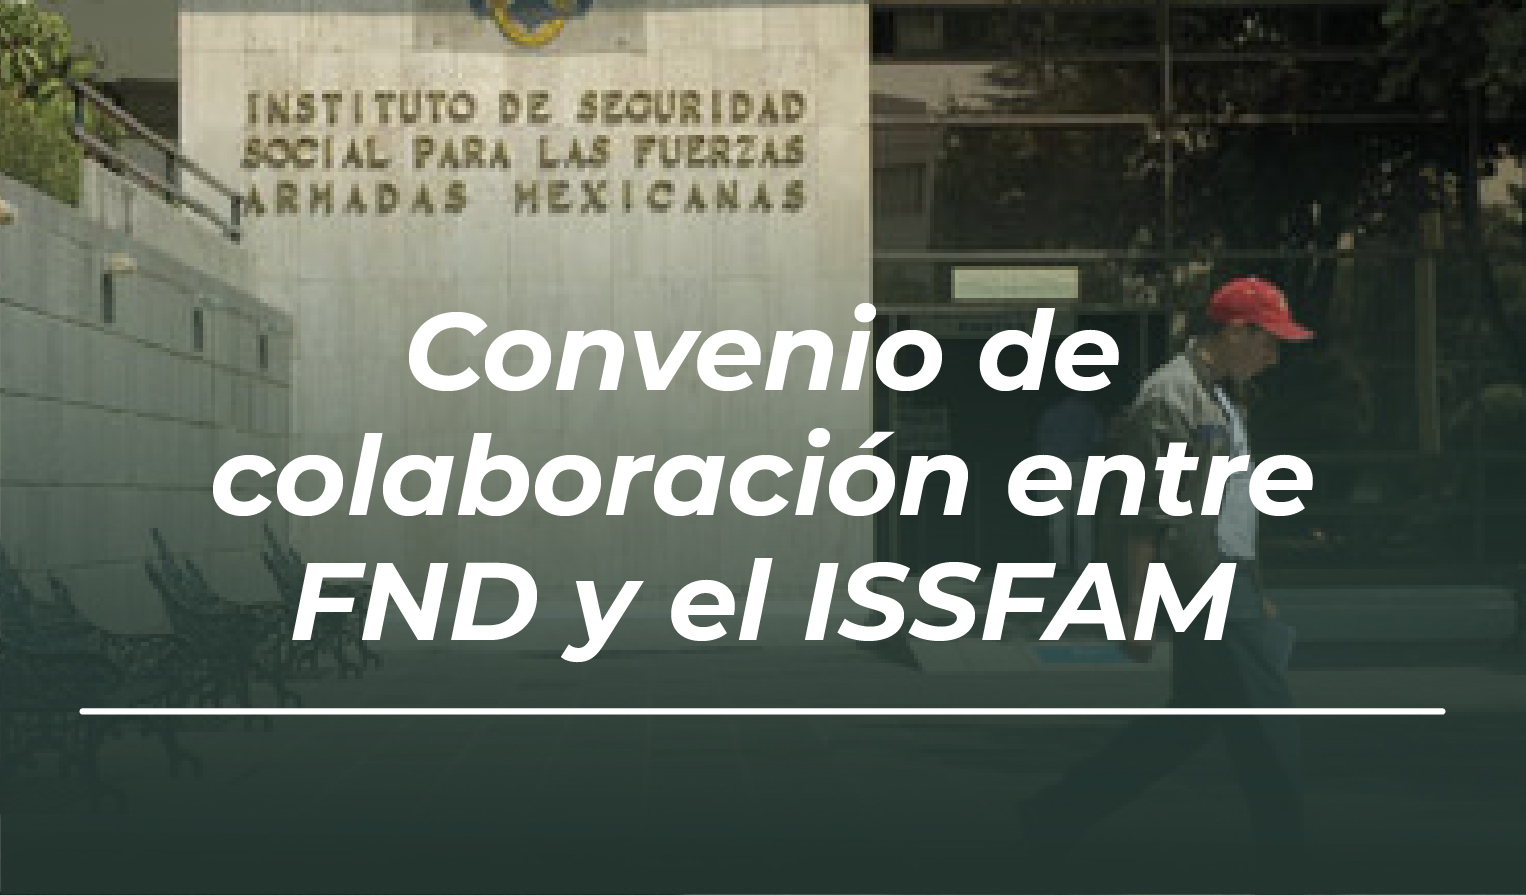 Convenio entre la FND y la SEDENA (ISSFAM)